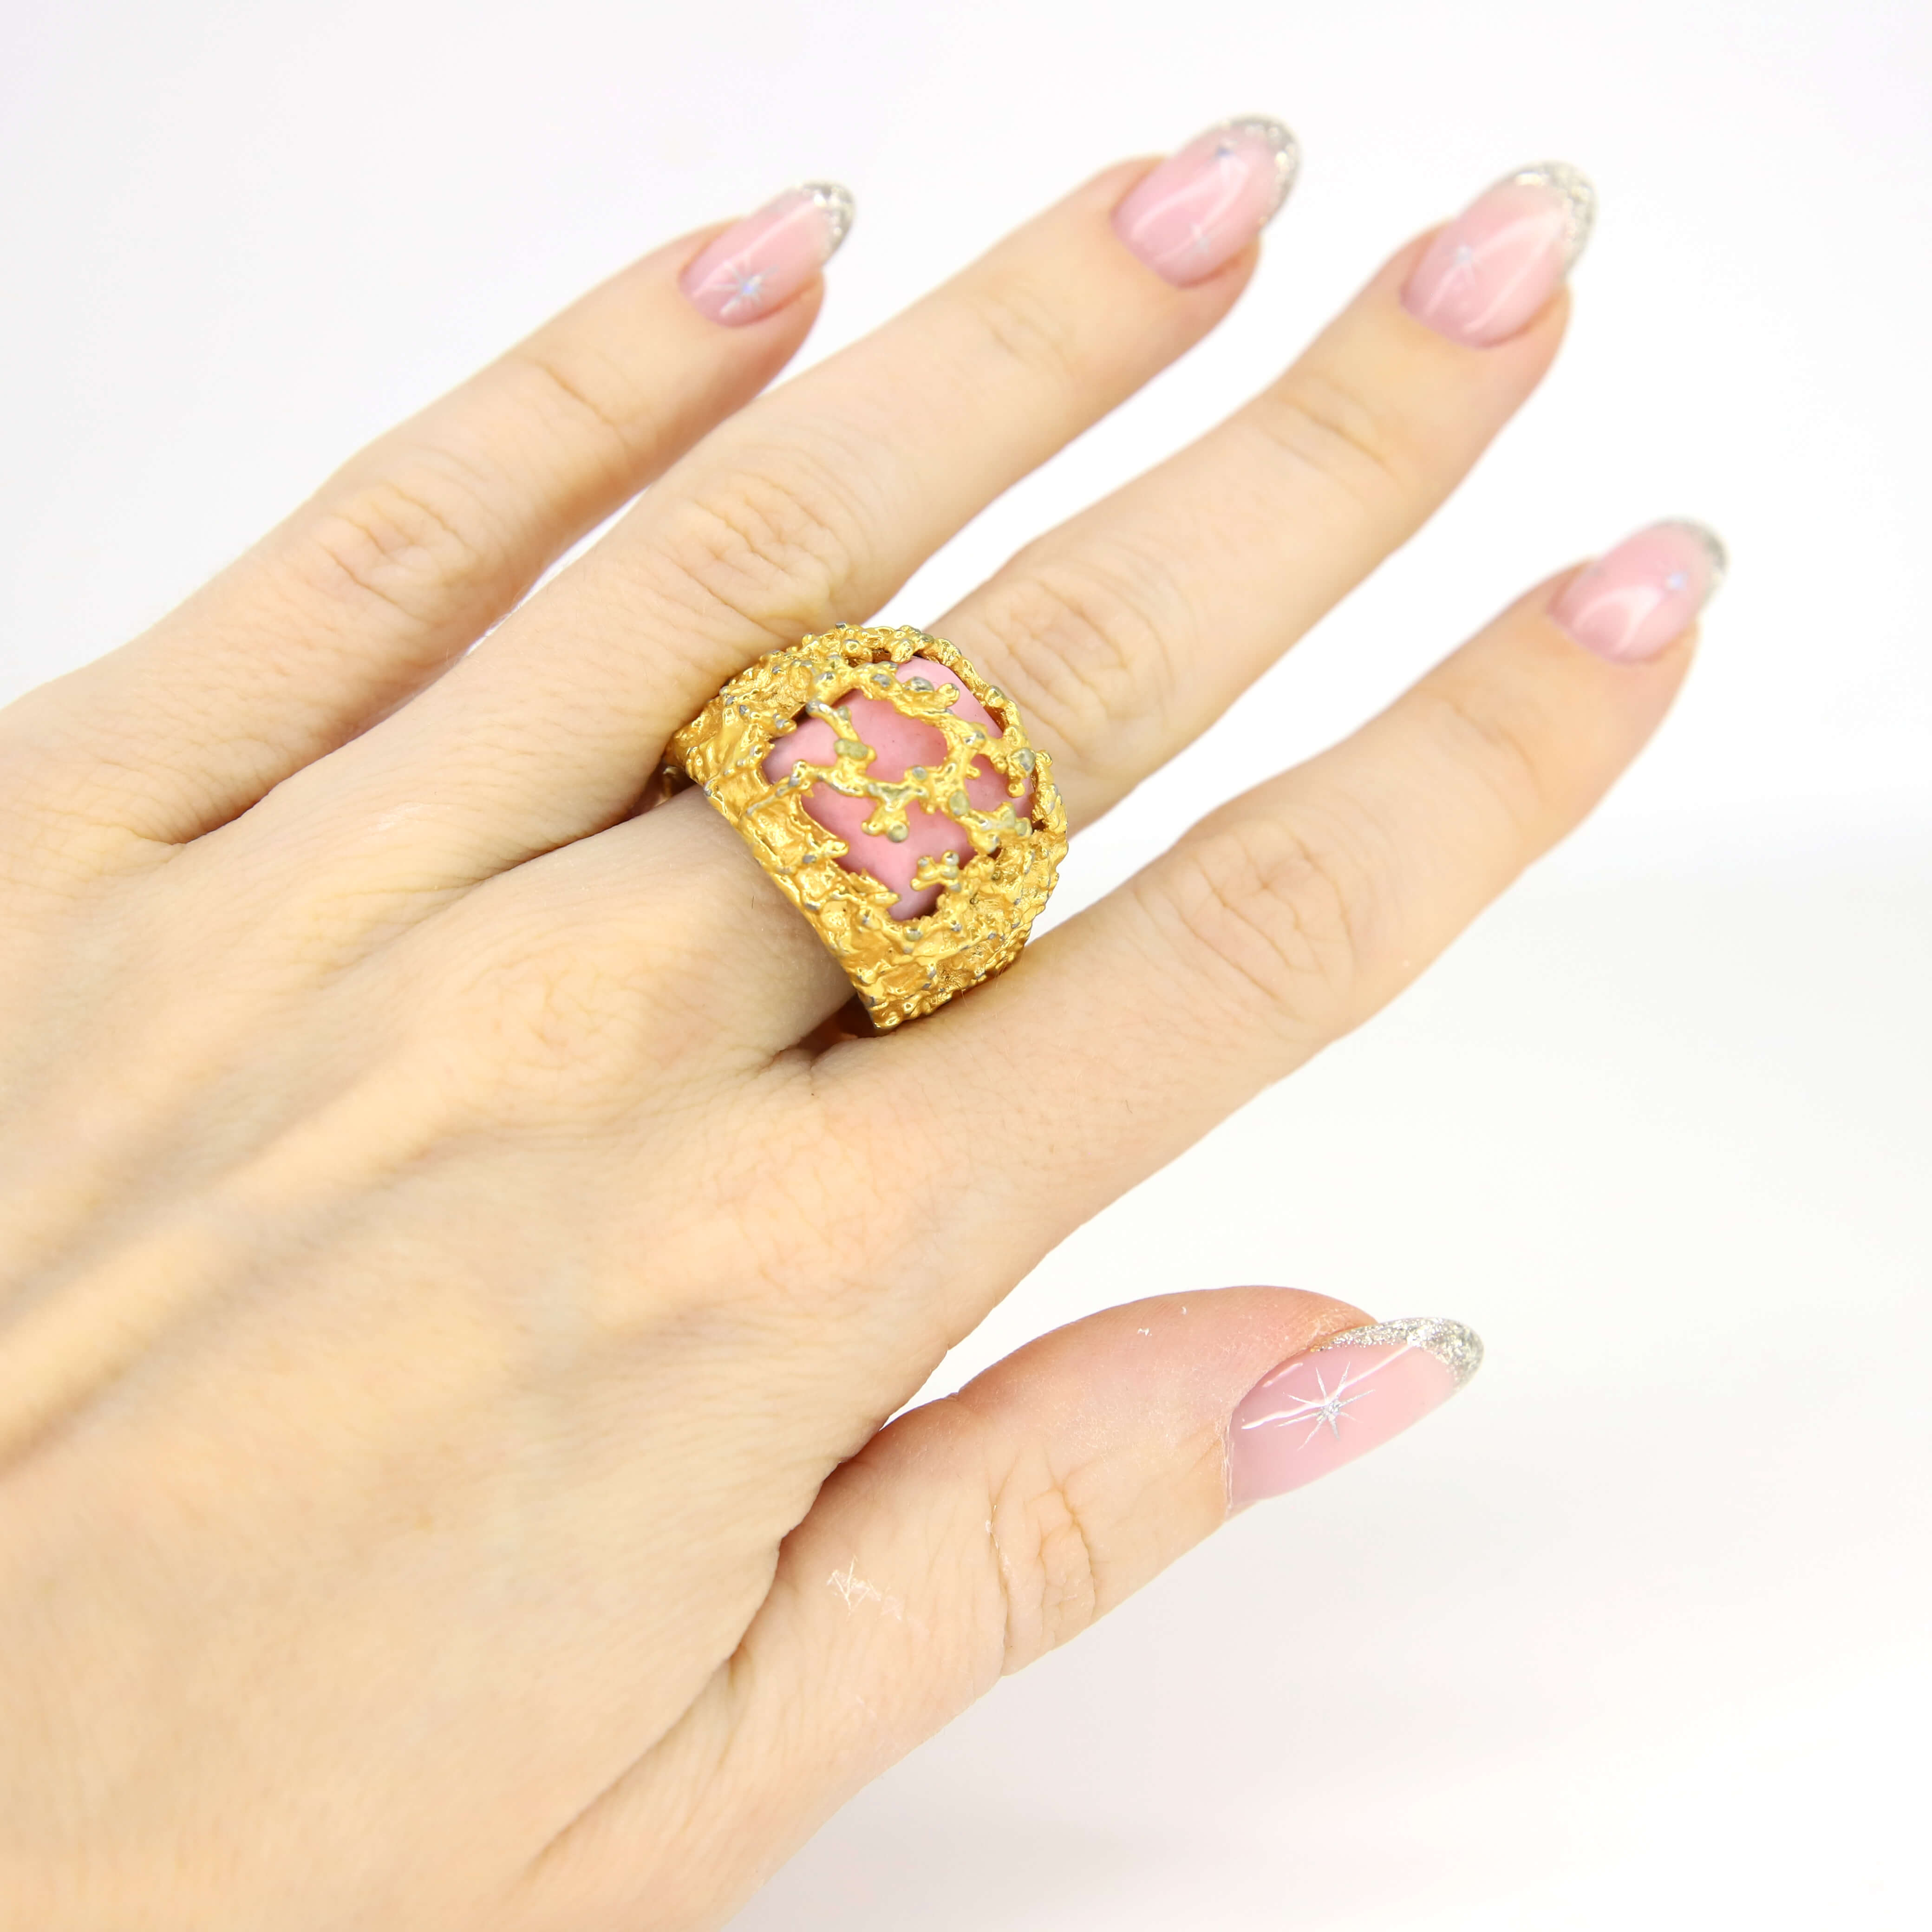 Винтажное кольцо размер 15.5-18, цвет Розовый, фото 1